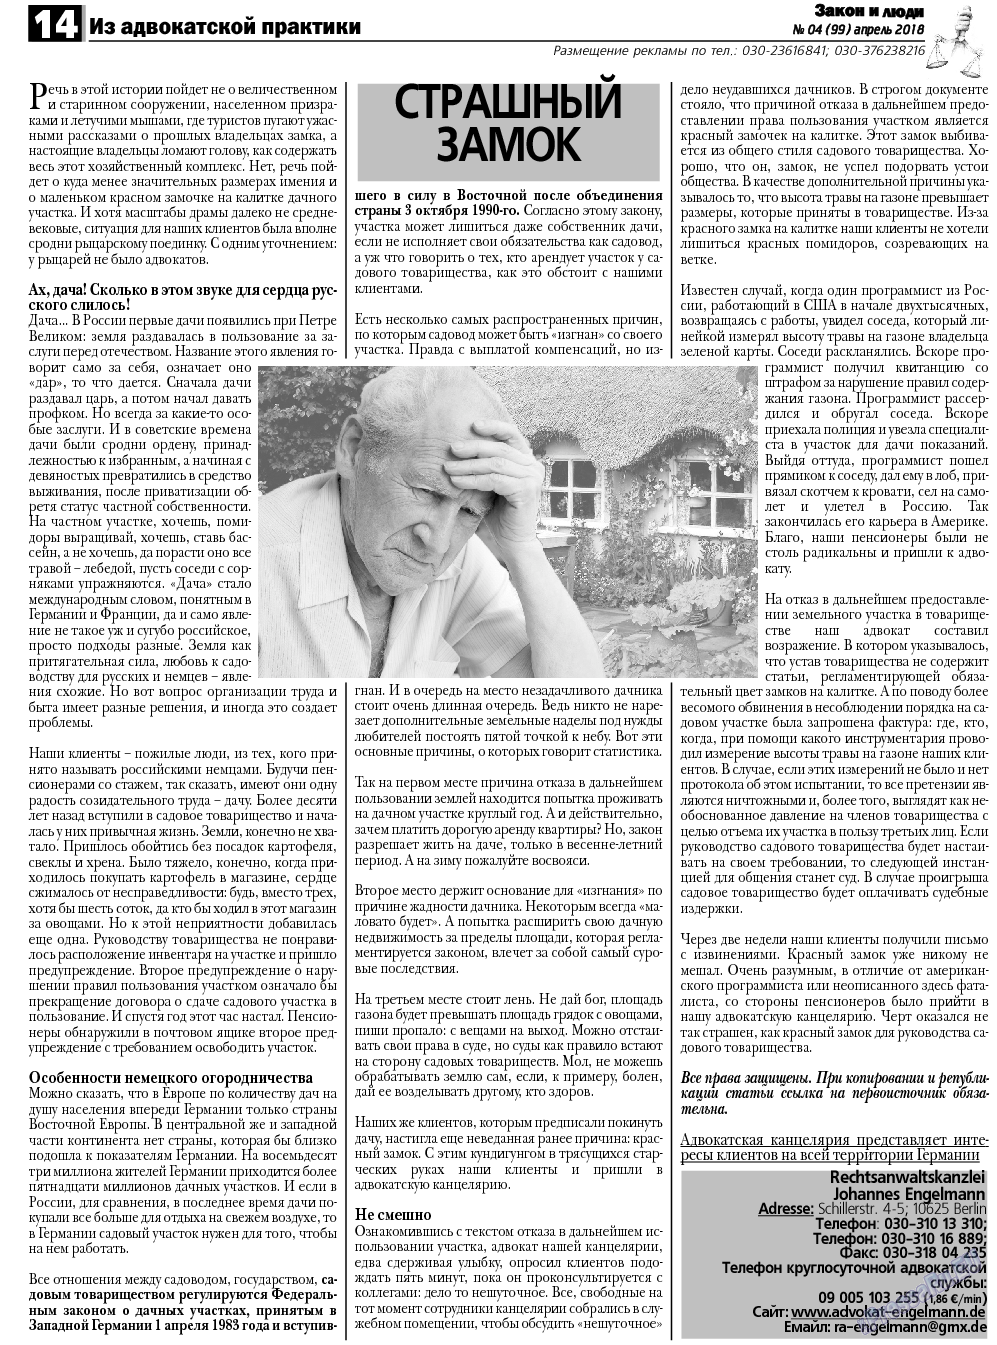 Закон и люди, газета. 2018 №4 стр.14